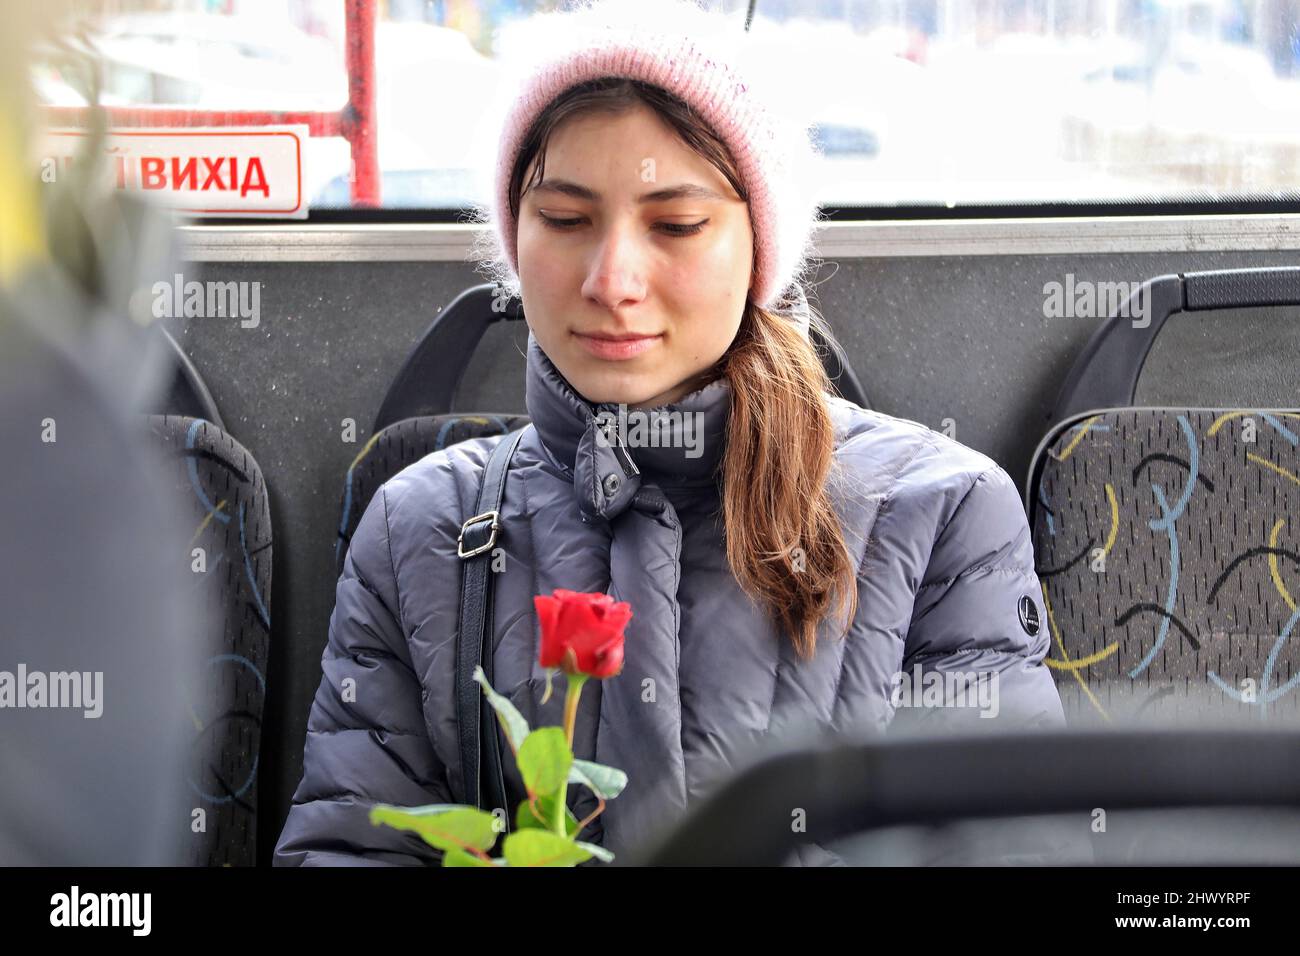 ODESA, UKRAINE - 8. MÄRZ 2022 - Eine junge Frau hält eine Rose, die im Rahmen einer traditionellen Aktion präsentiert wird, wenn Frauen aus Odesa Blumen und kostenlose Fahrten erhalten Stockfoto